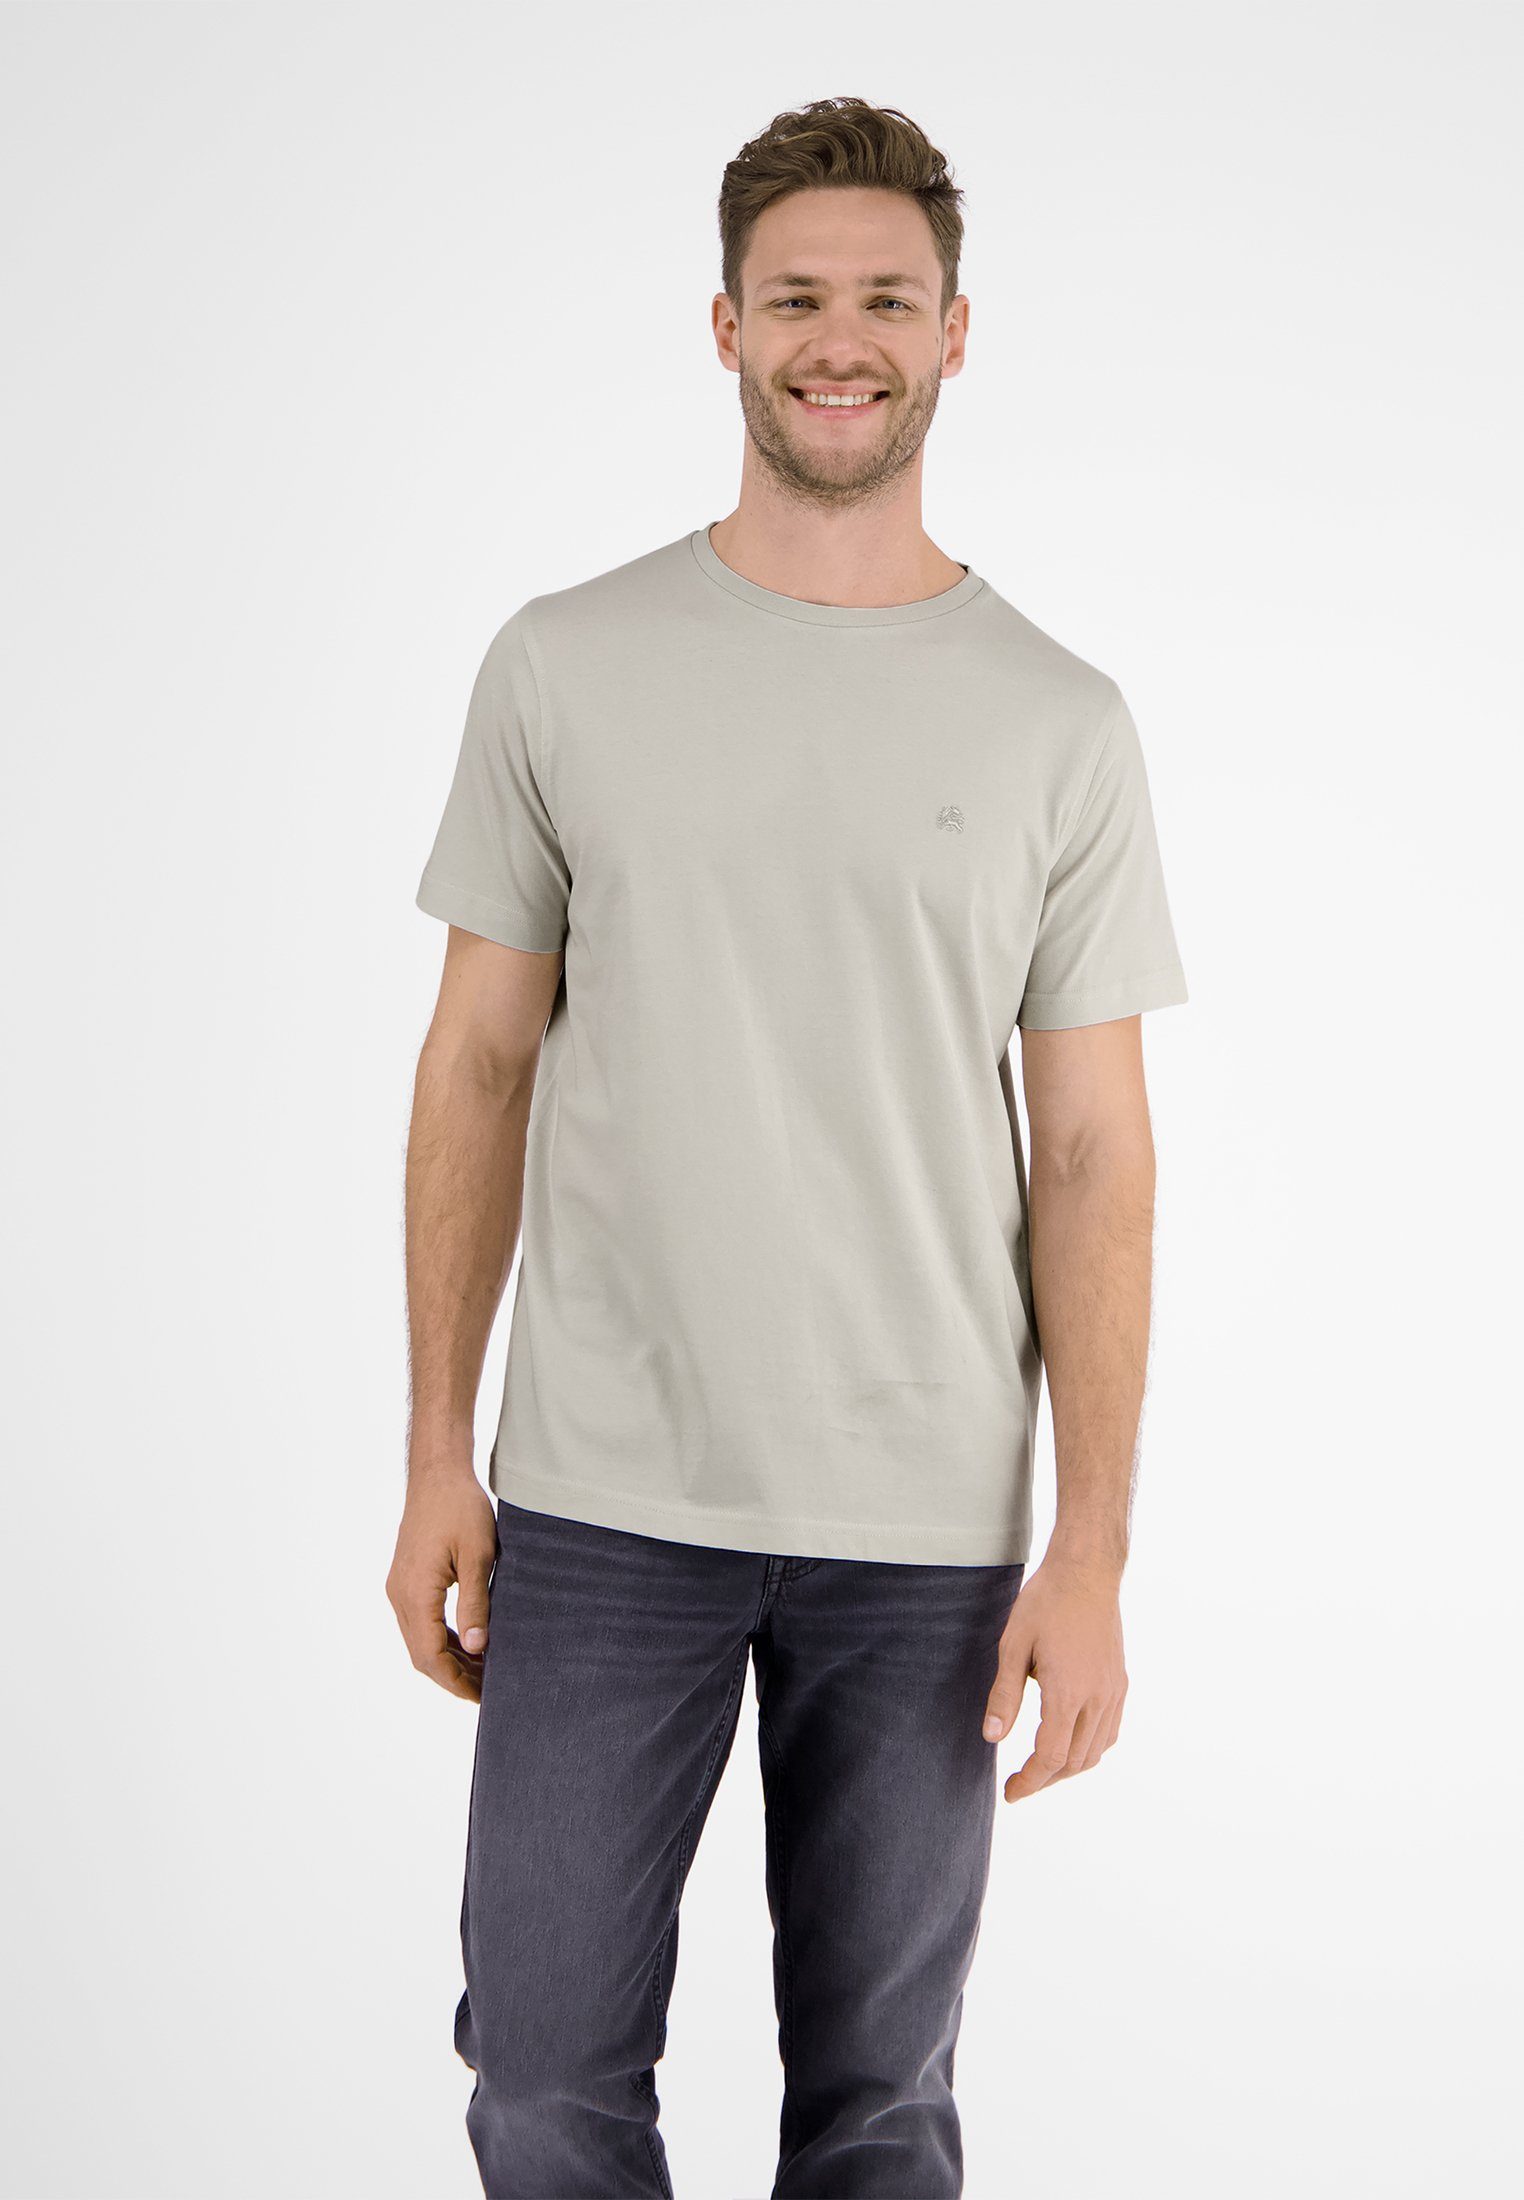 T-Shirt in vielen Basic LERROS T-Shirt WHITE FOG LERROS Farben